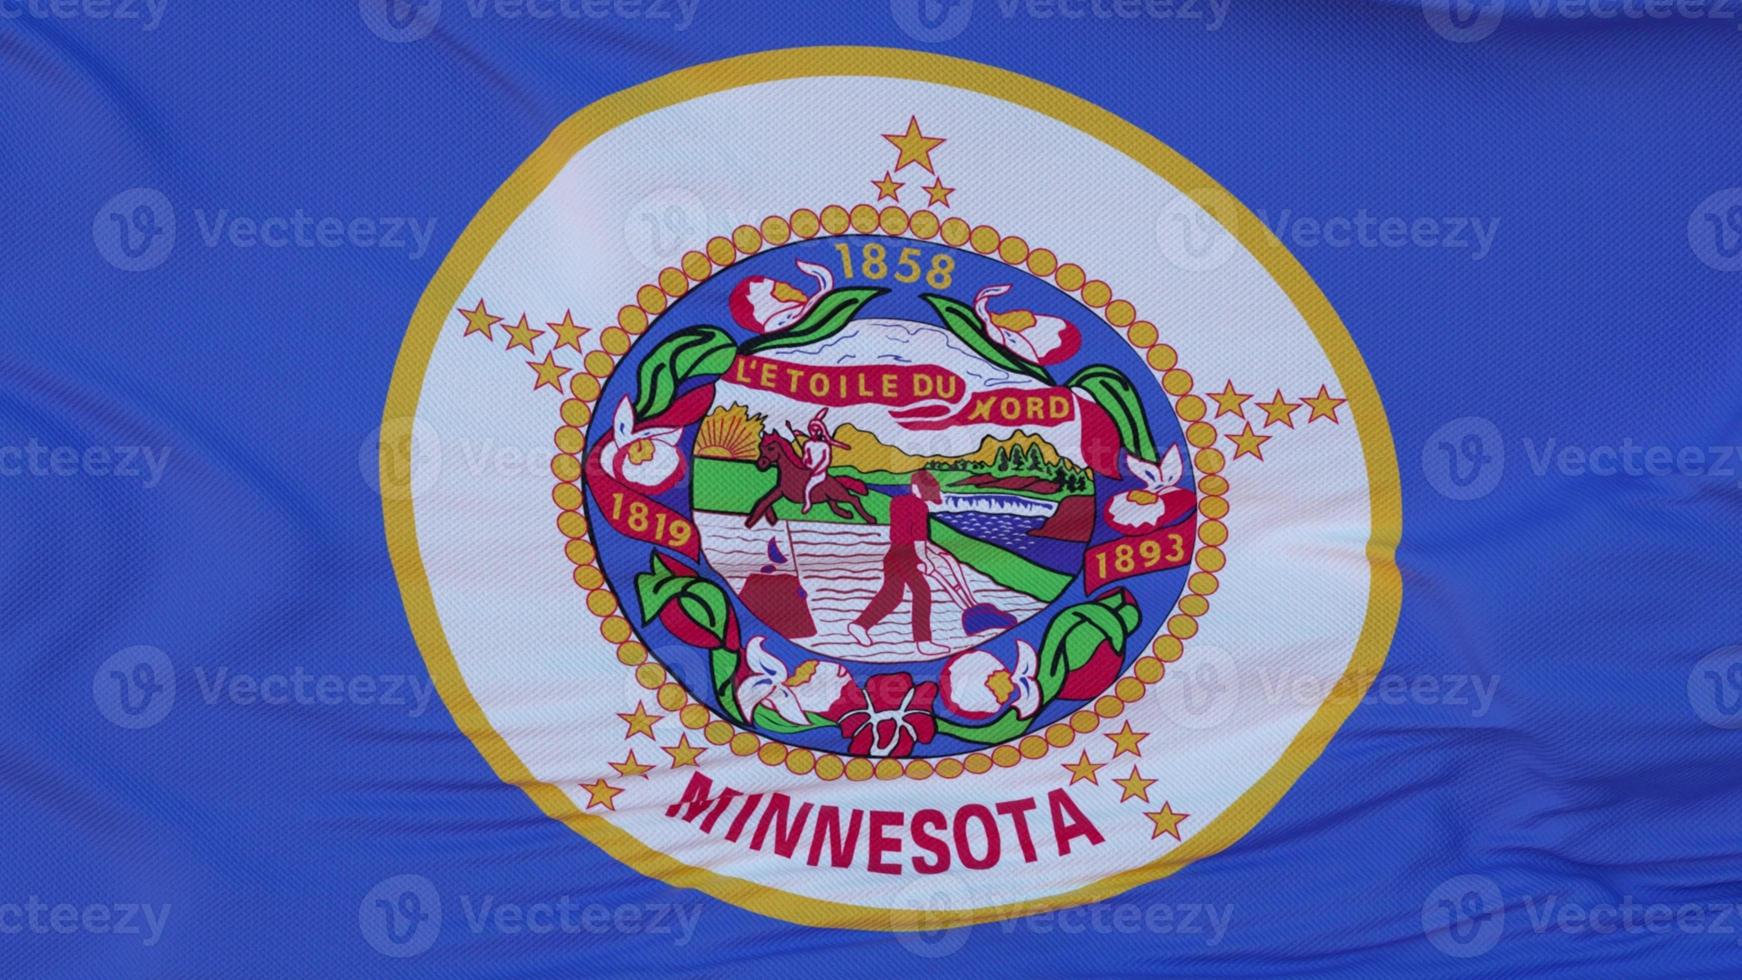 bandeira do estado de minnesota, região dos estados unidos, balançando ao vento. ilustração 3D foto